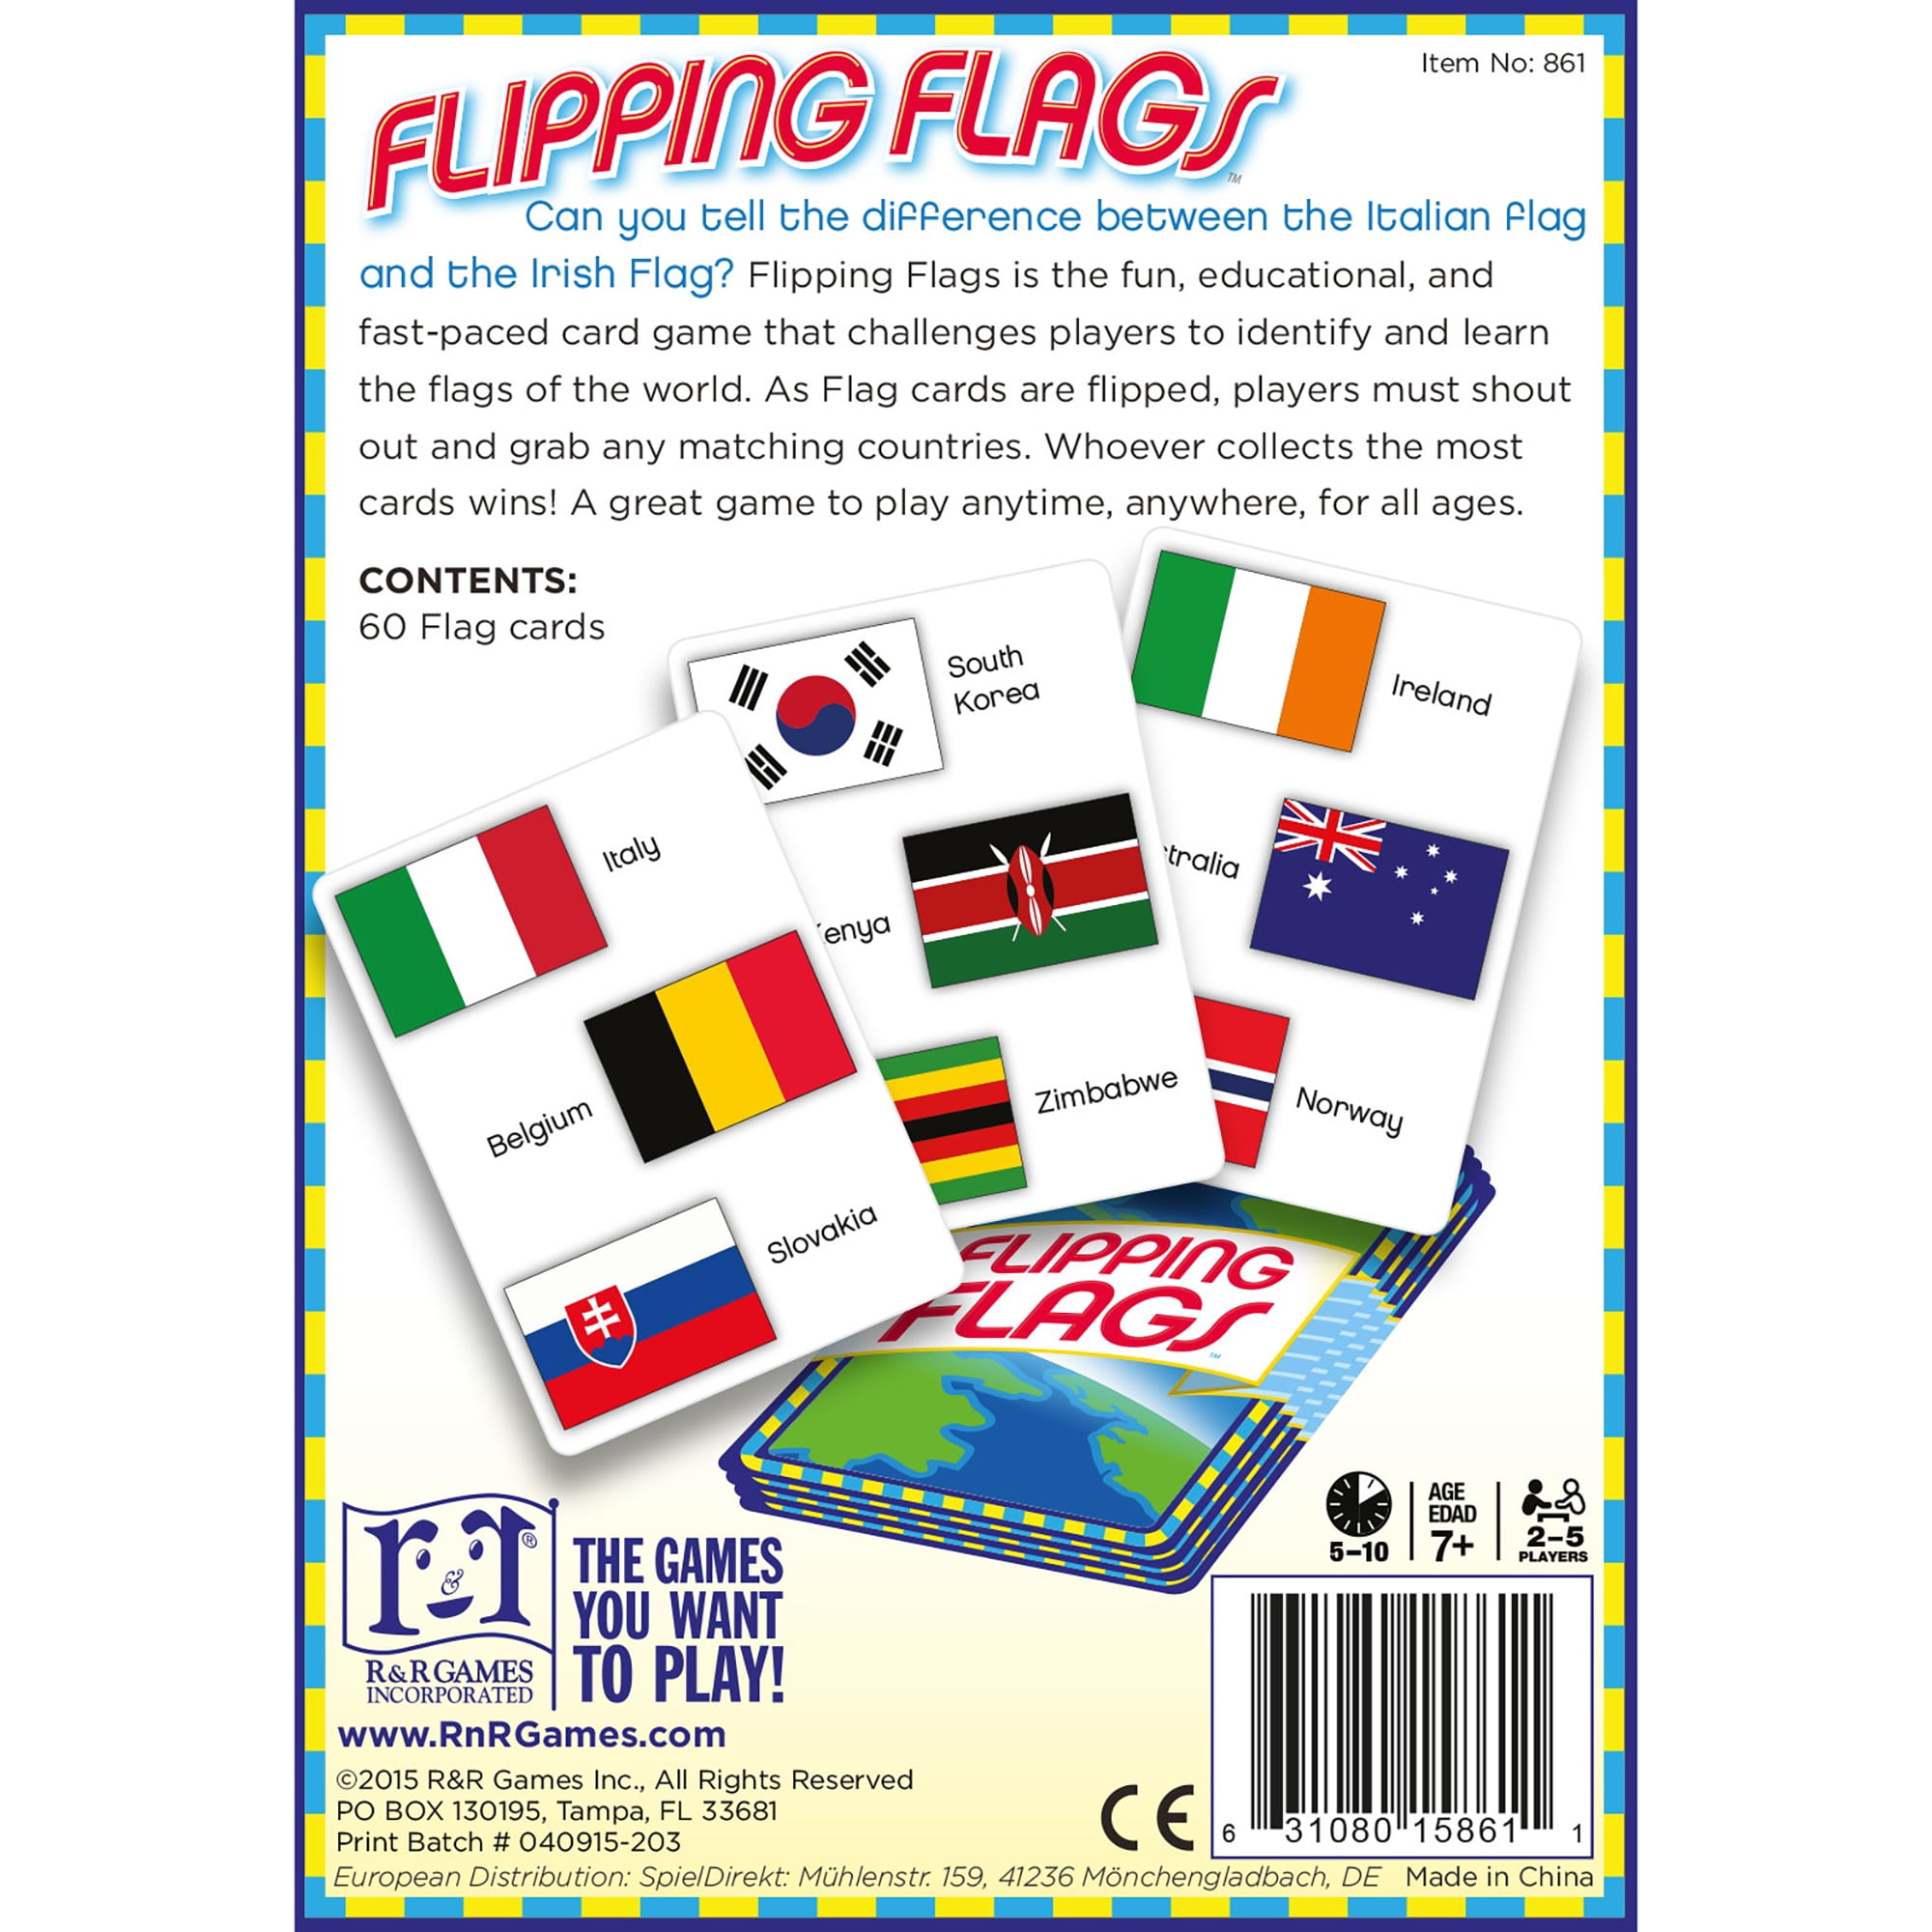 Flag Frenzy USA, Board Game